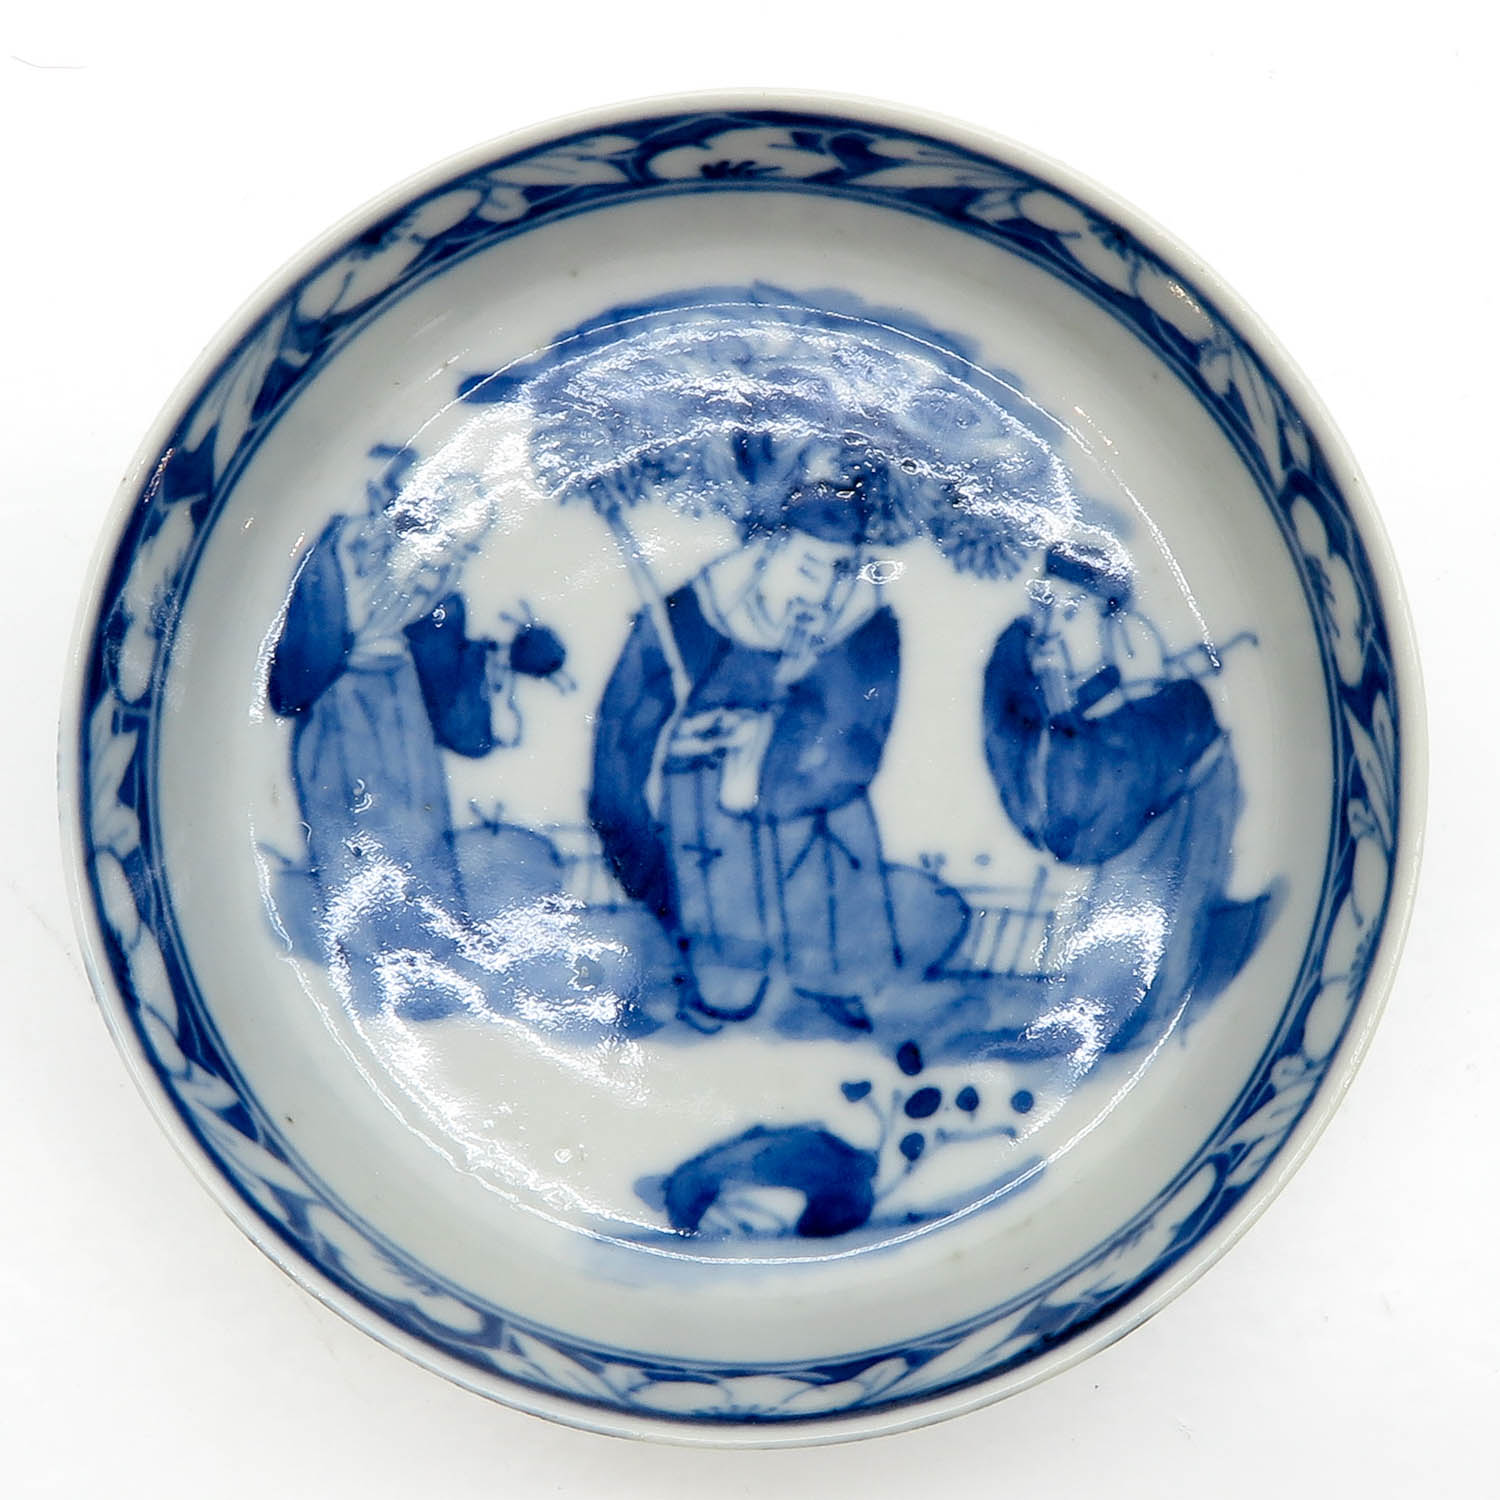 China Porcelain Bowl - Image 4 of 4